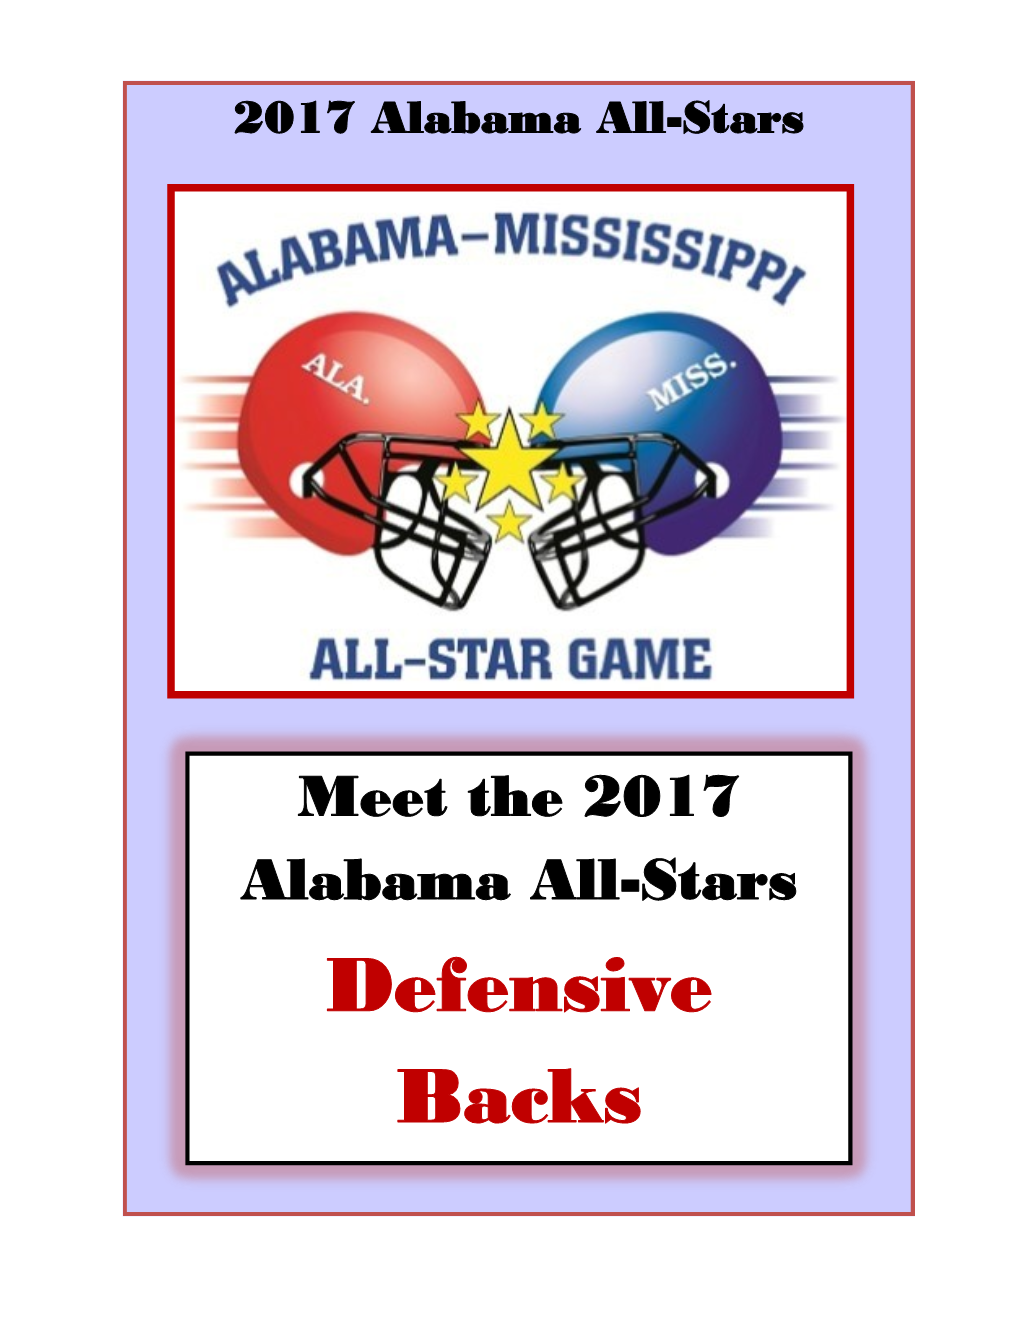 Defensive Backs 2017 Alabama All-Stars